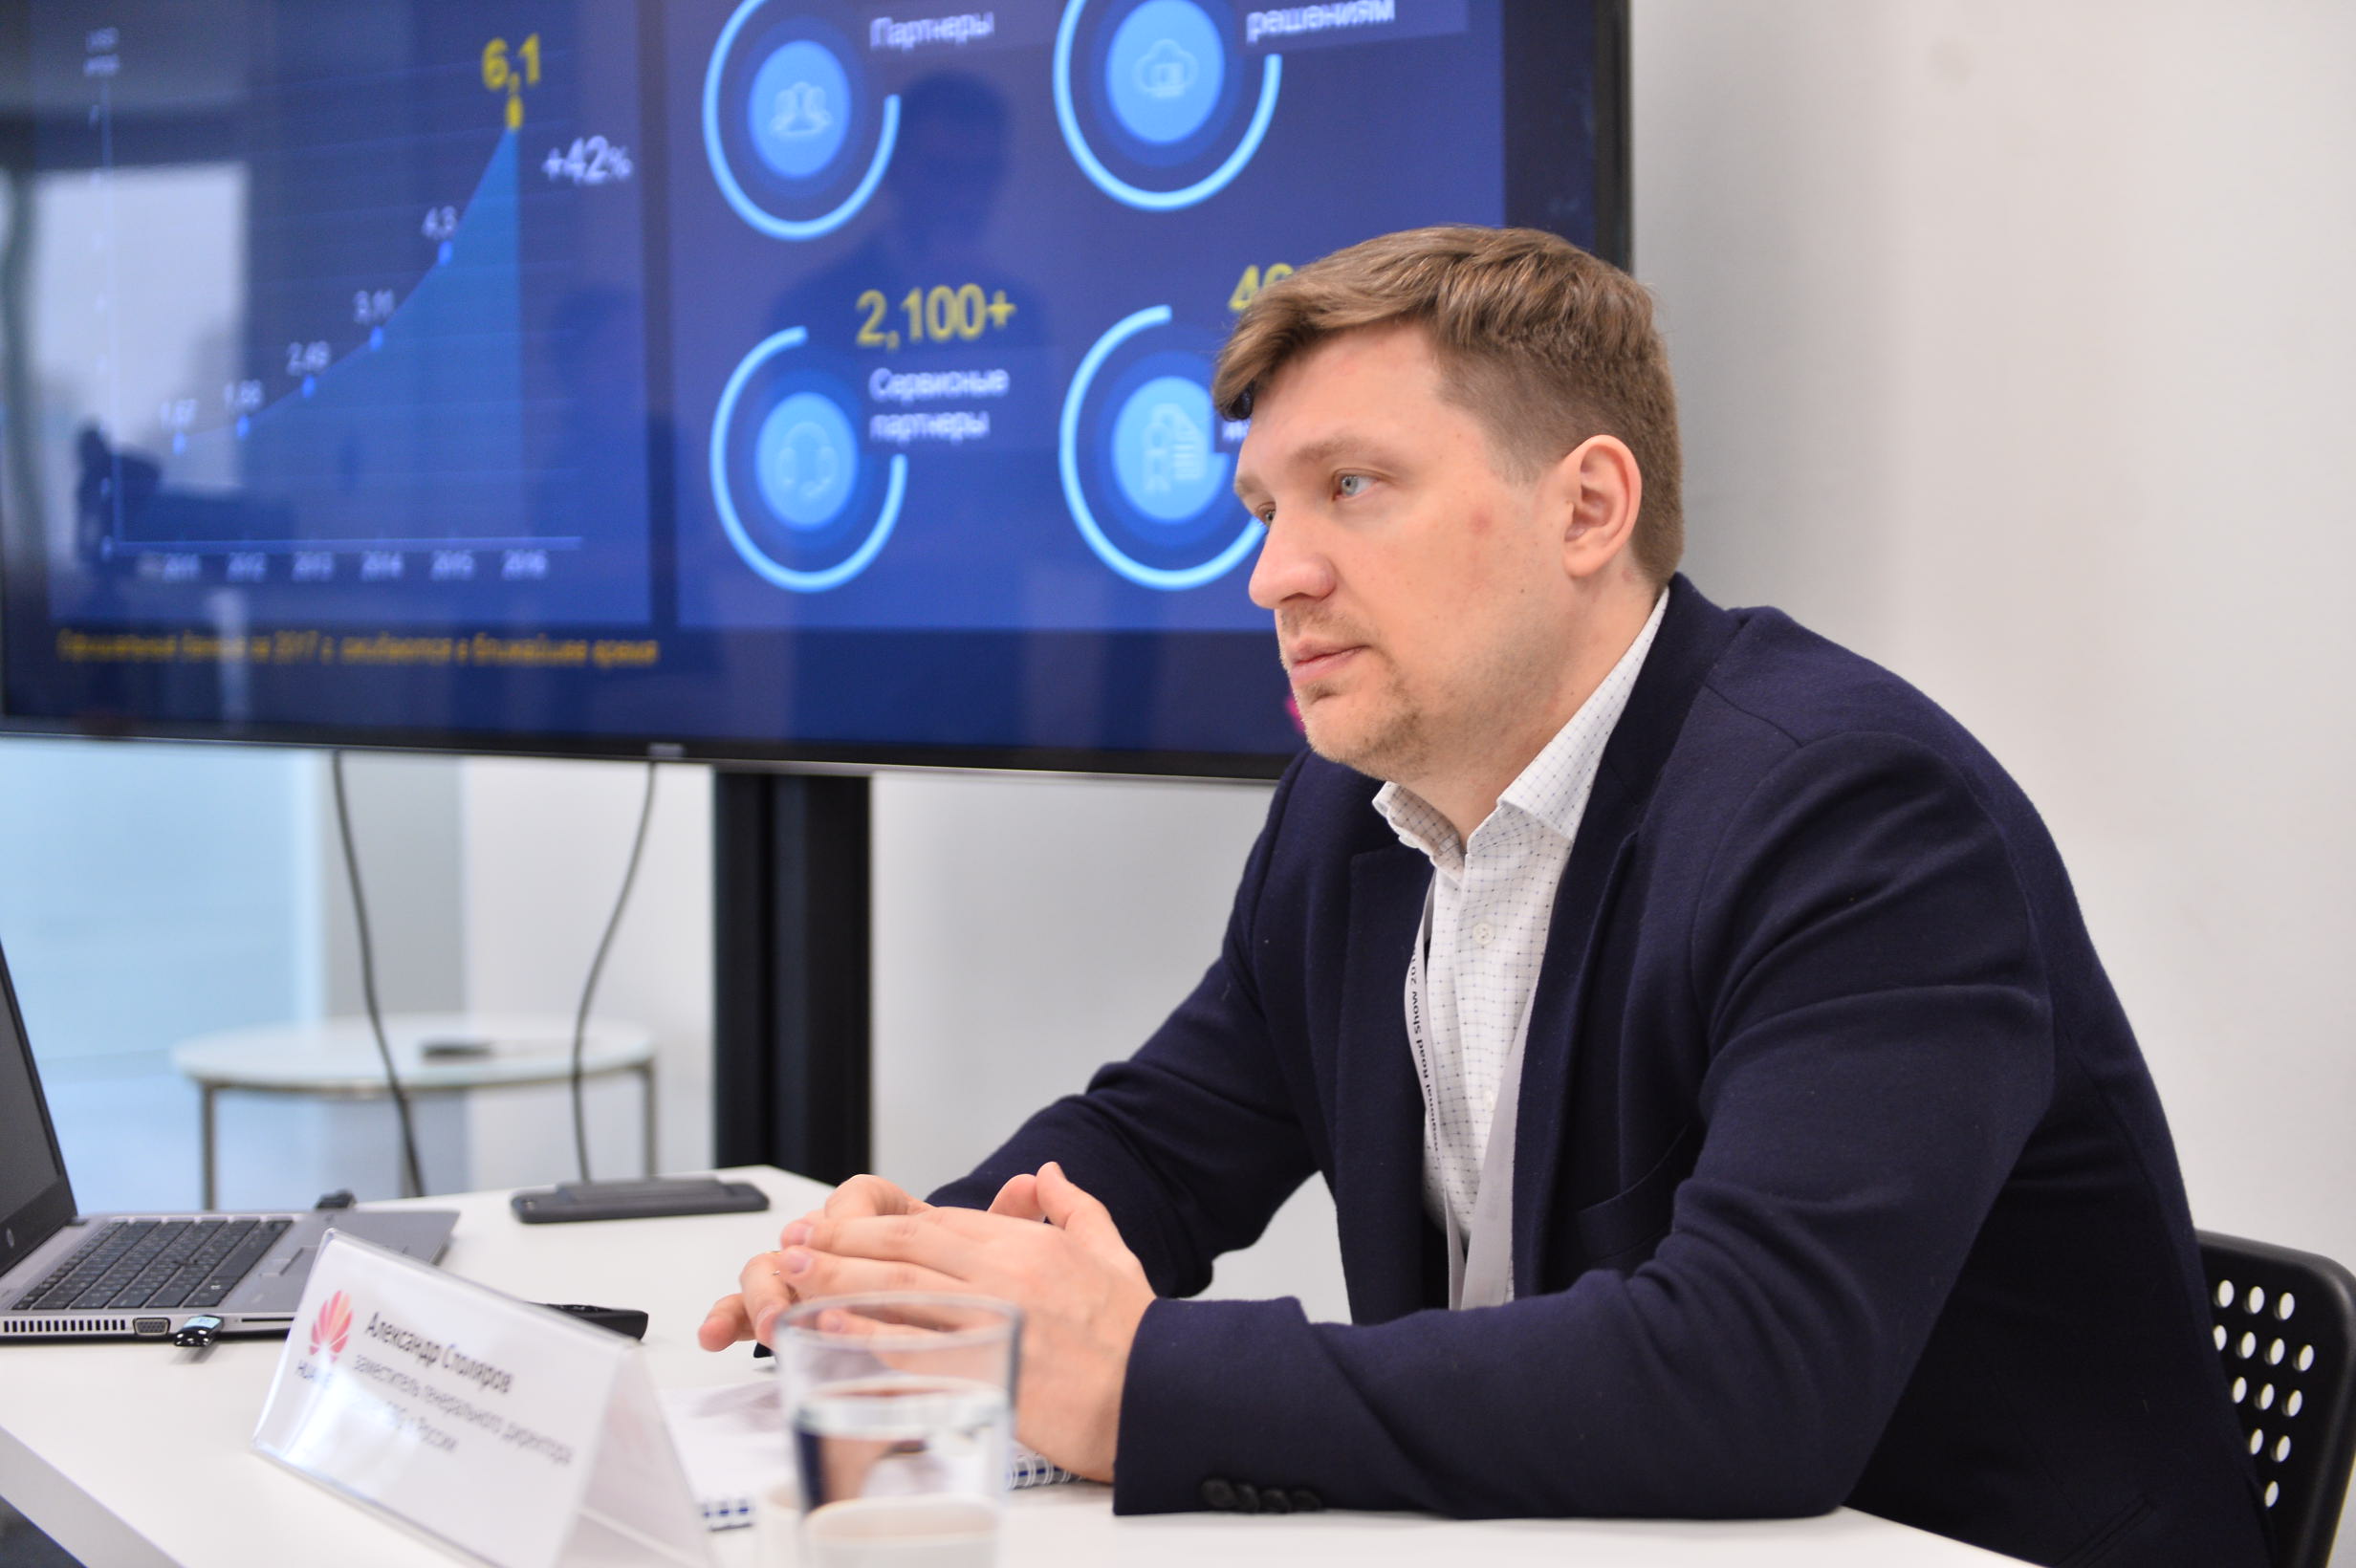 Олександр Столяров на прес-брифінгу Huawei EBG в Єкатеринбурзі: «Сучасні технології формують новий ландшафт і створюють нові можливості для людства»